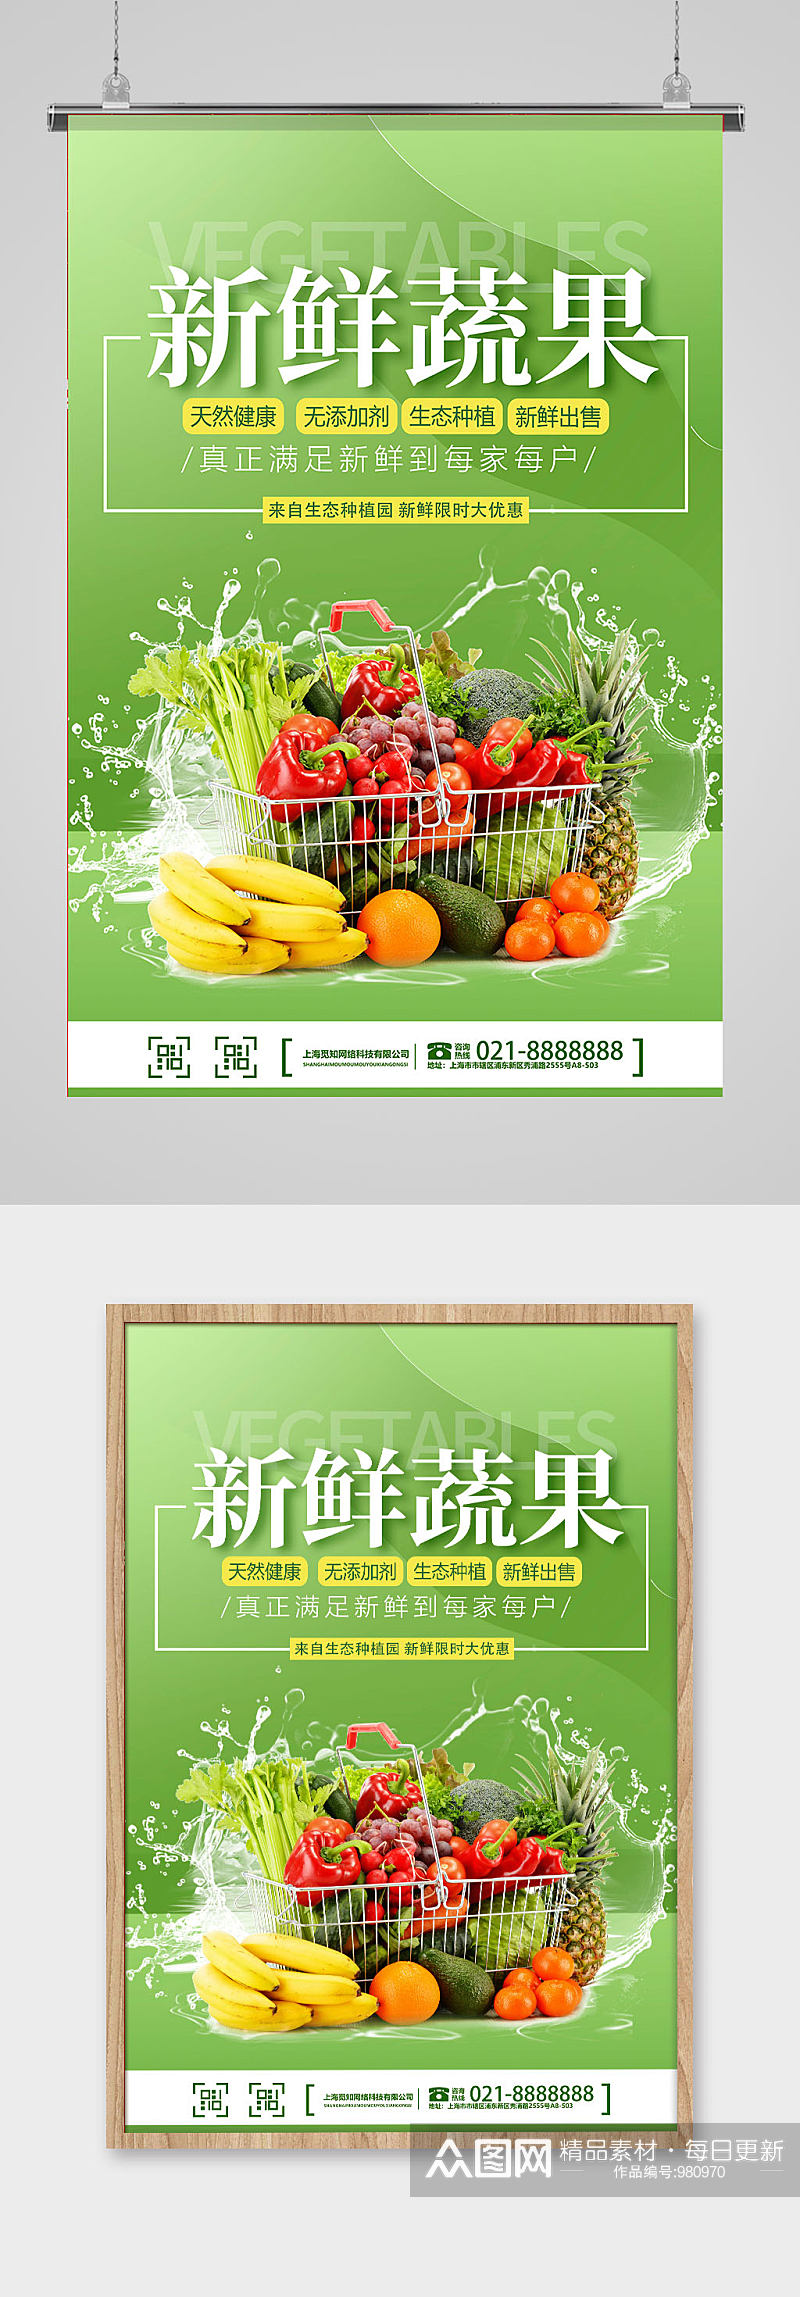 新鲜蔬果水果超市海报素材